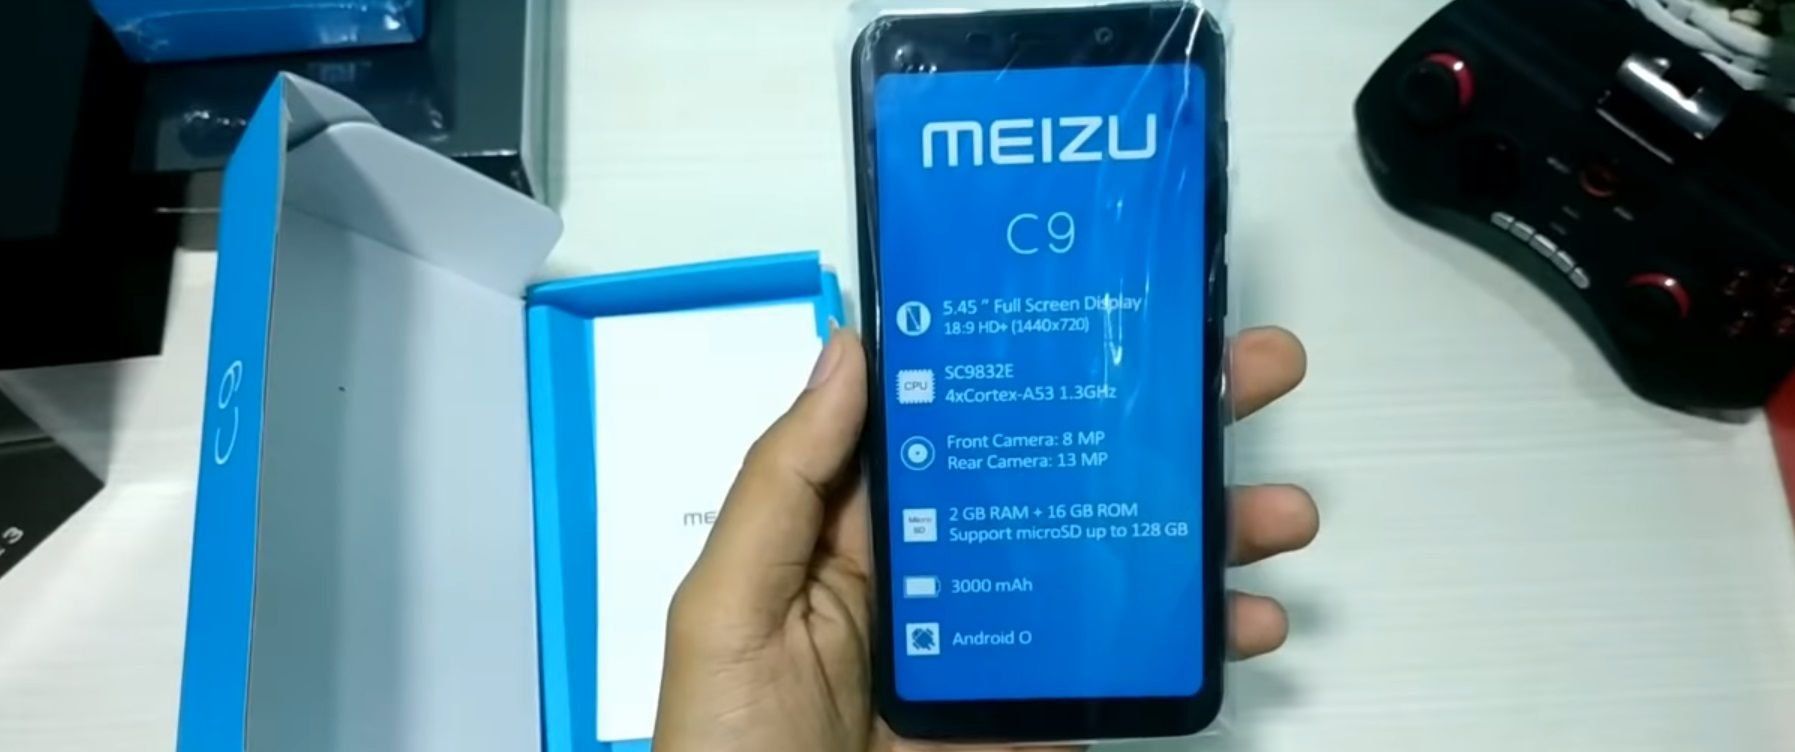 Telefon pintar Meizu C9 dan C9 Pro - kelebihan dan kekurangan